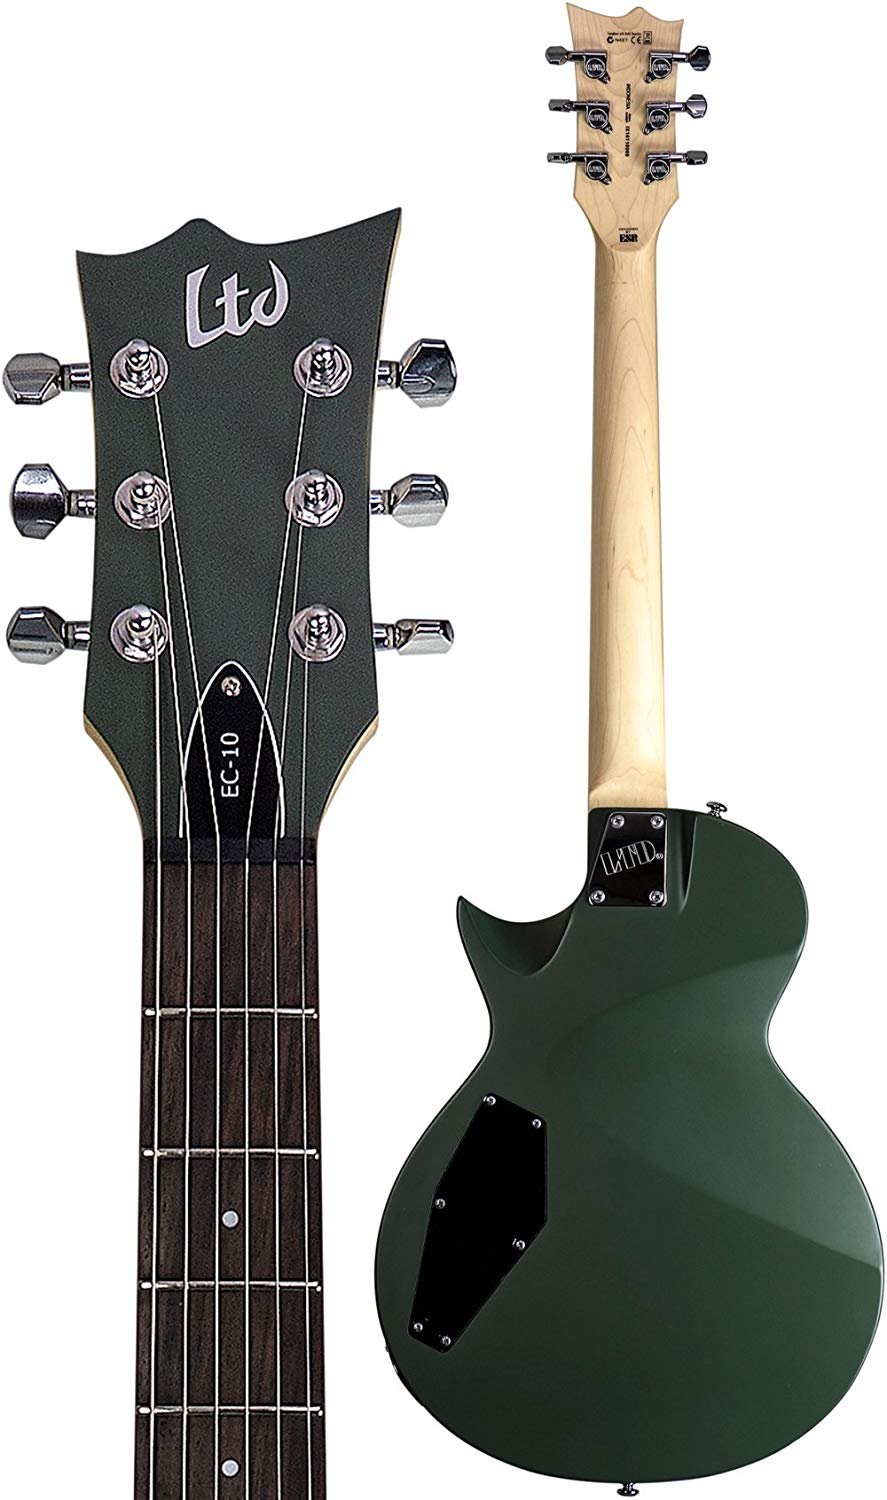 Ltd Ec-10 Kit Hh Ht Rw +housse - Black - Guitarra eléctrica de corte único. - Variation 6